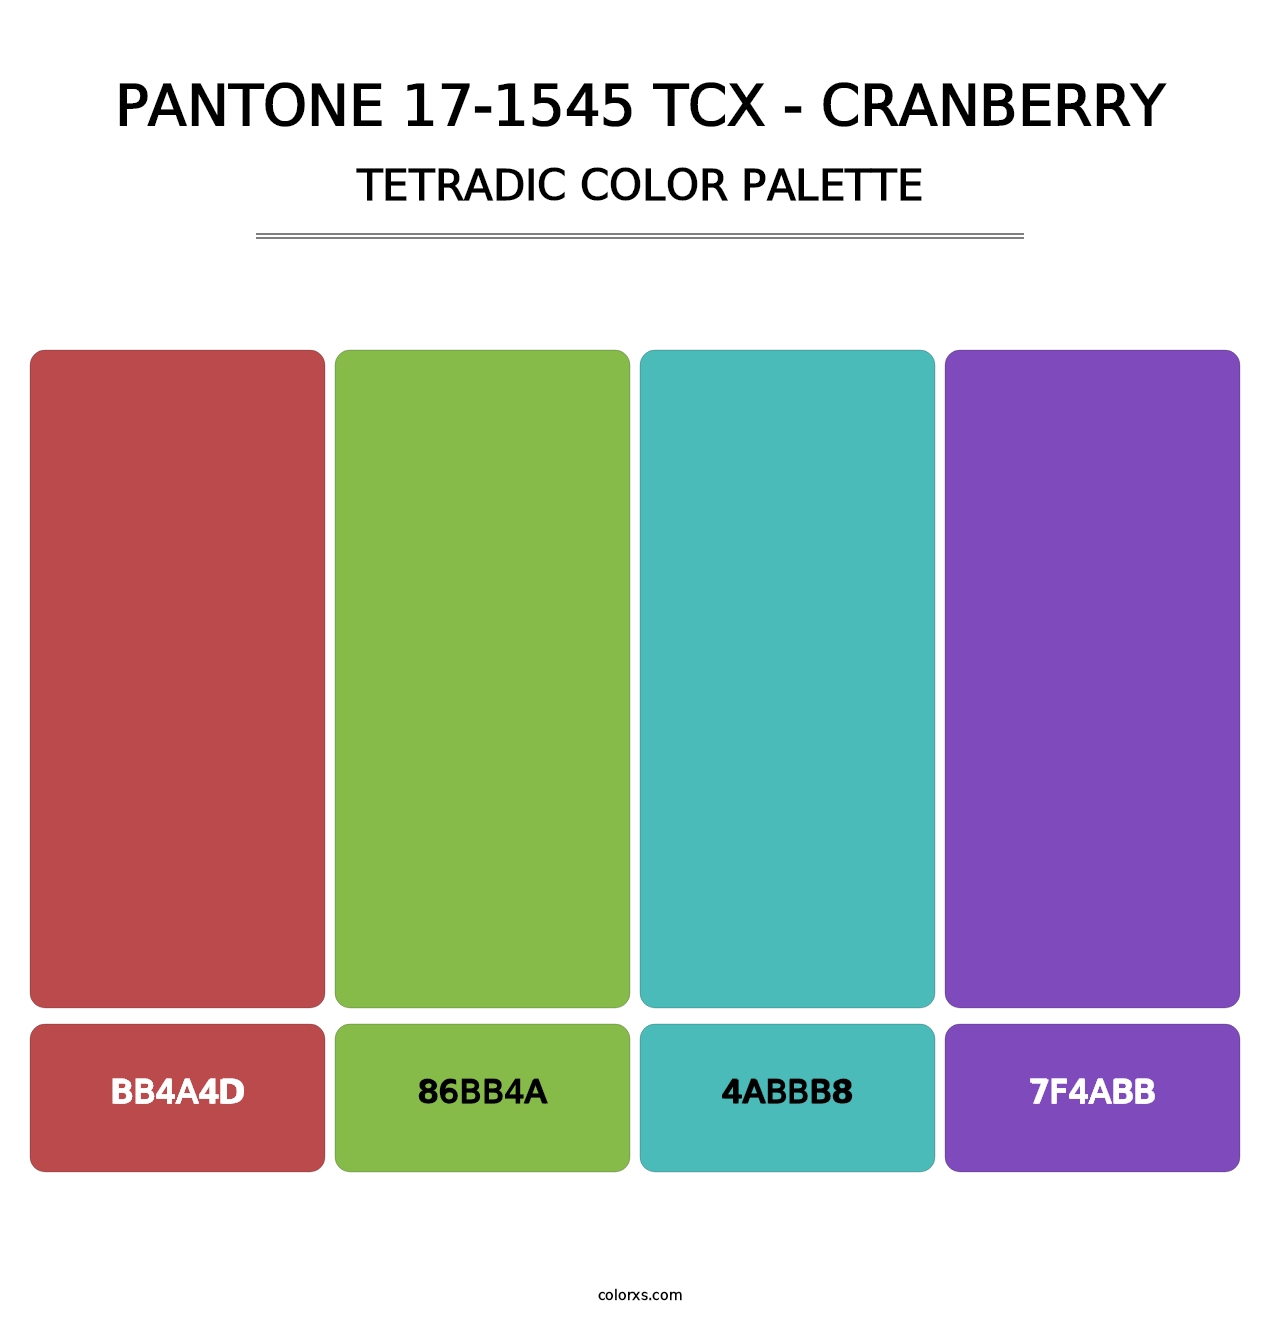 PANTONE 17-1545 TCX - Cranberry - Tetradic Color Palette